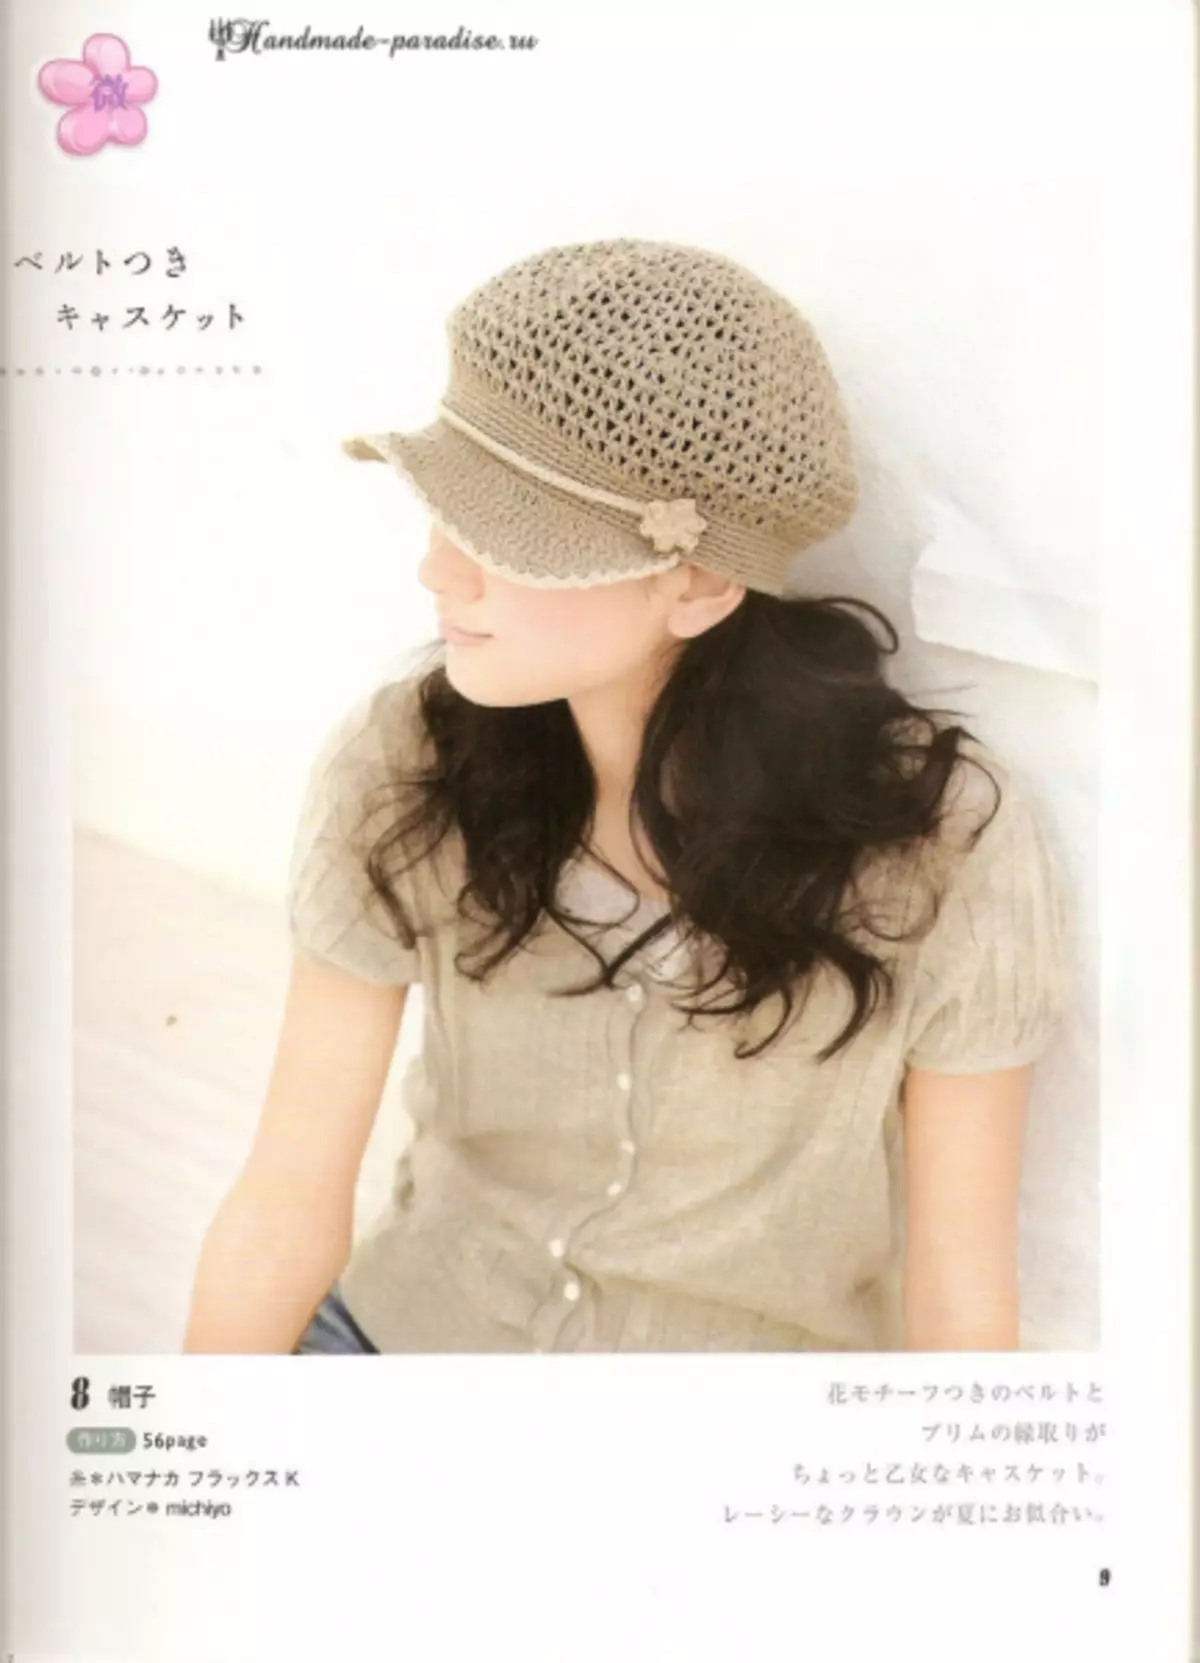 Crochet ग्रीष्मकालीन सहायक उपकरण। योजनाओं के साथ जापानी पत्रिका